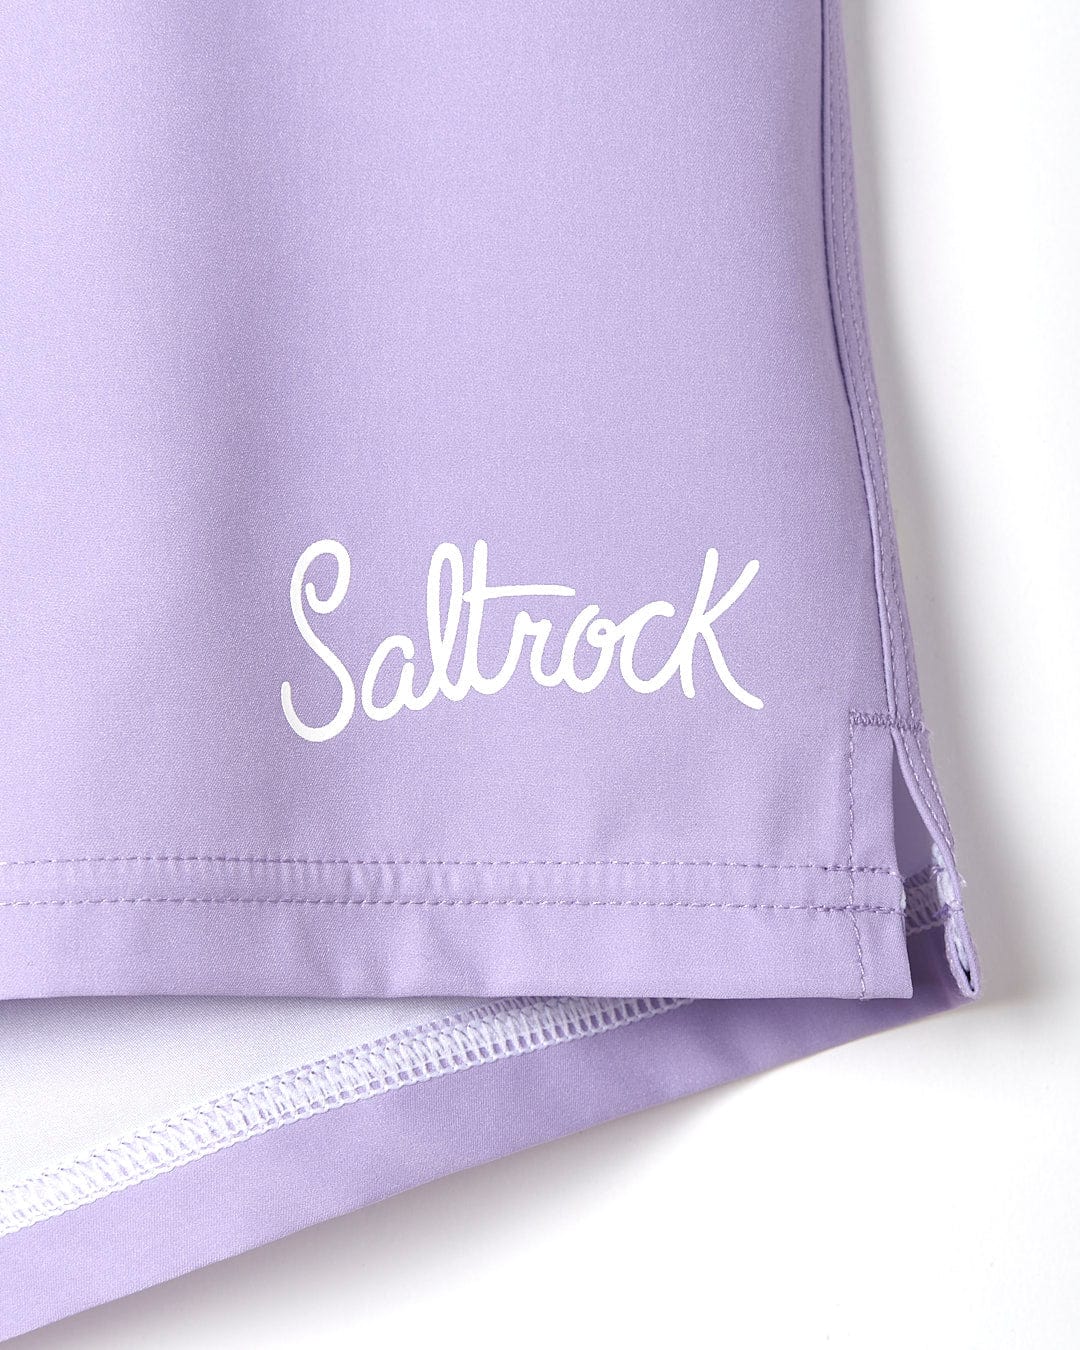 A Shoreline - Womens Boardshort - Light Purple with the word Saltrock on it.